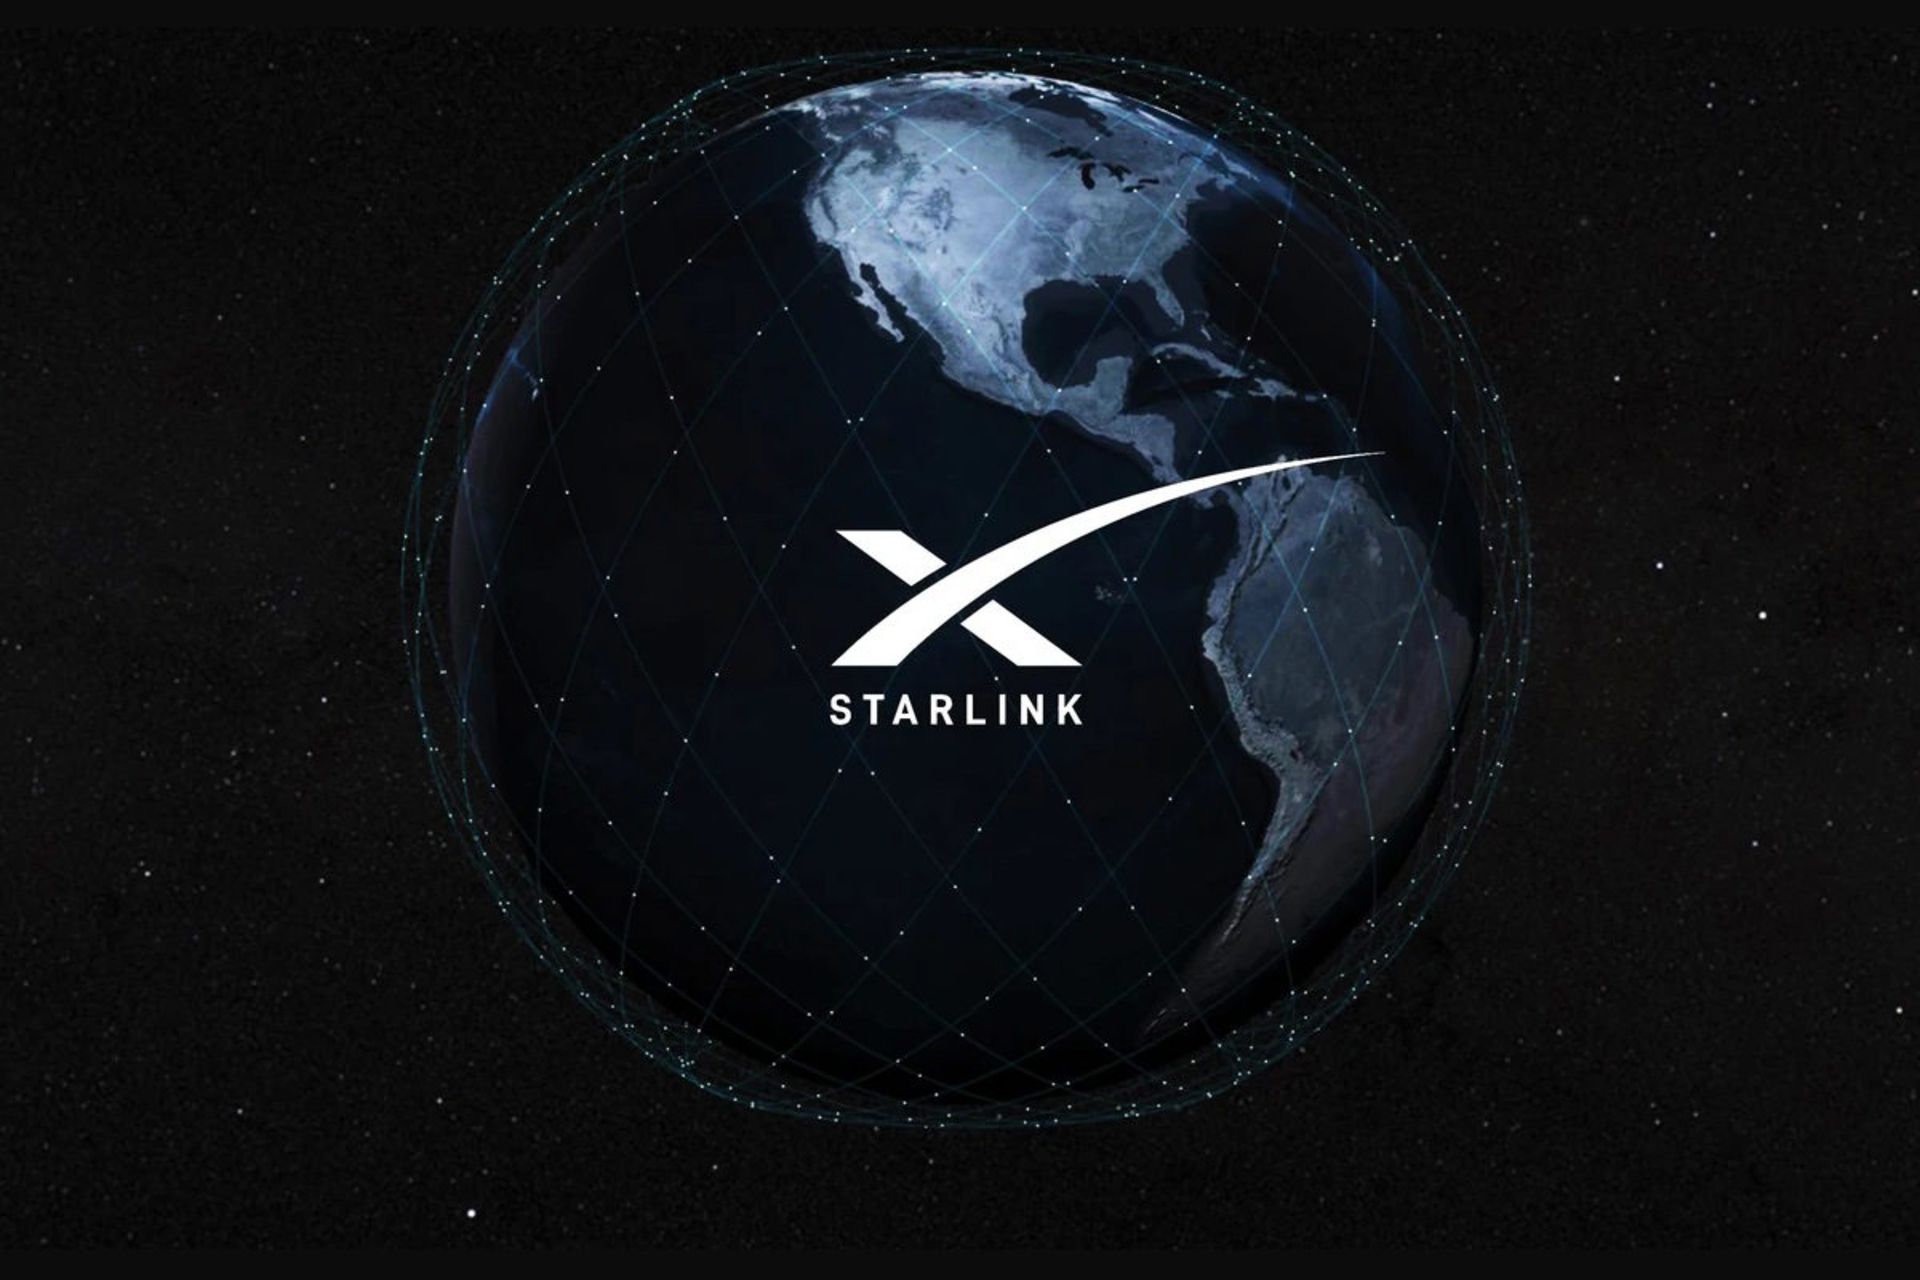 لوگو اینترنت استارلینک / SpaceX Starlink زمین از فضا